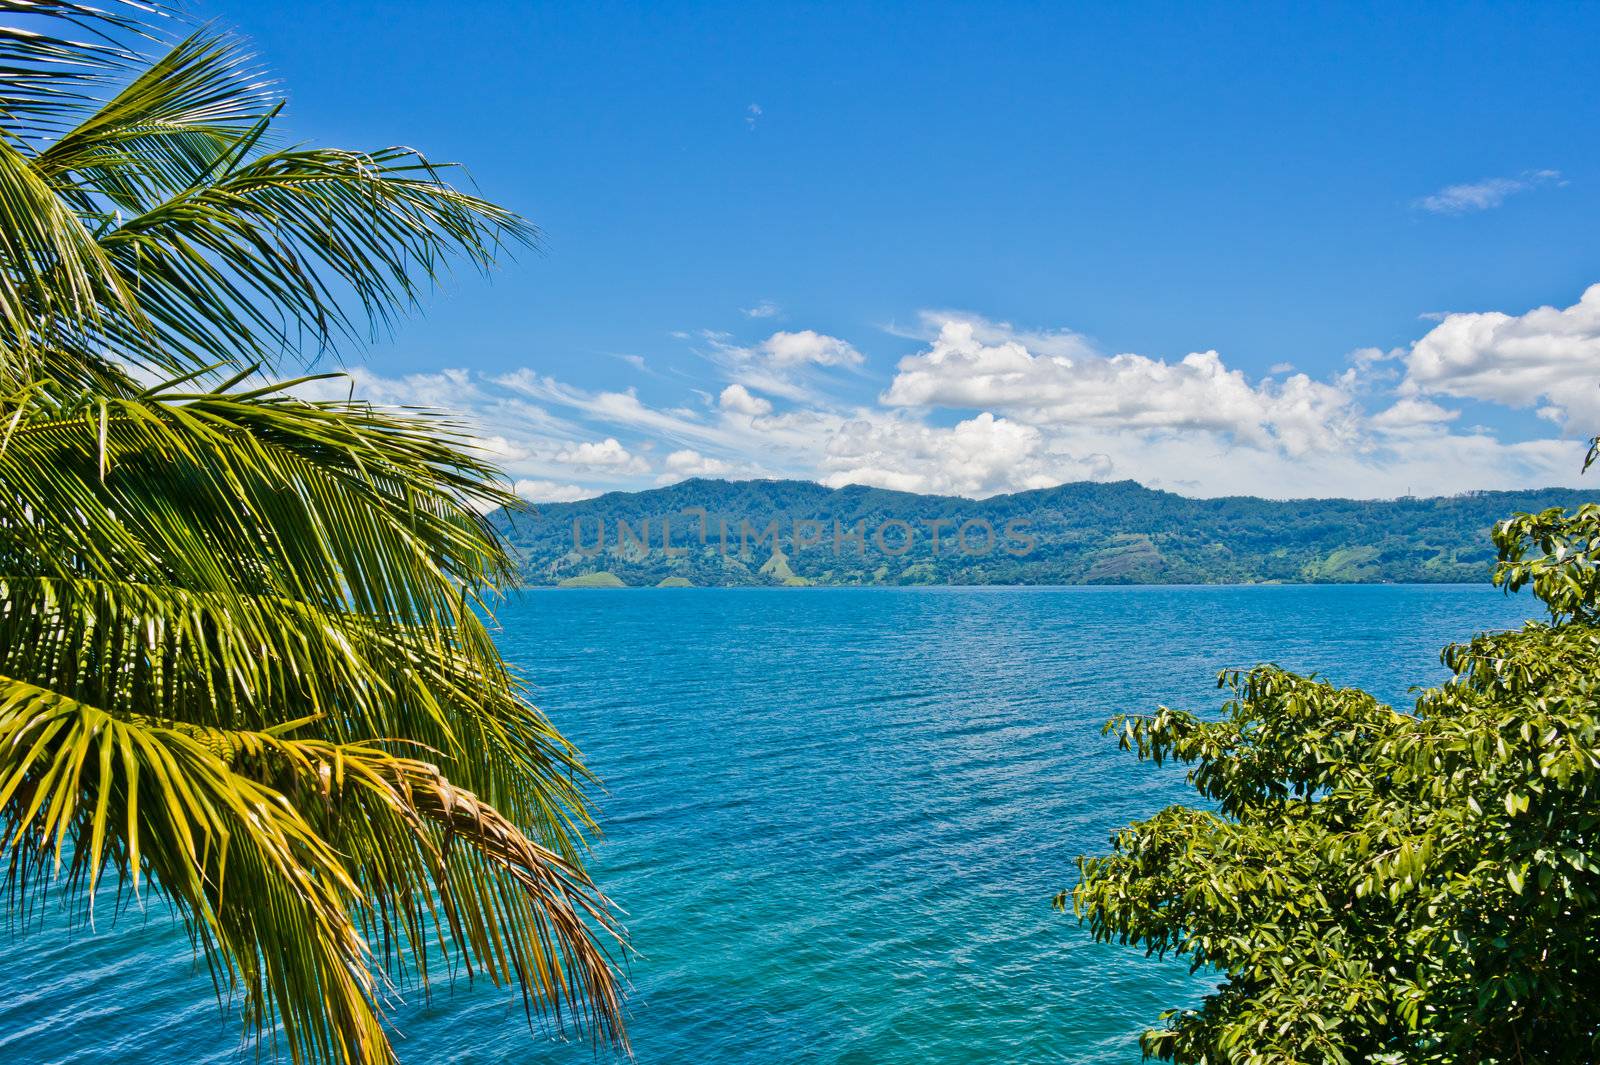 View of Lake Toba in Sumatra by photoroman